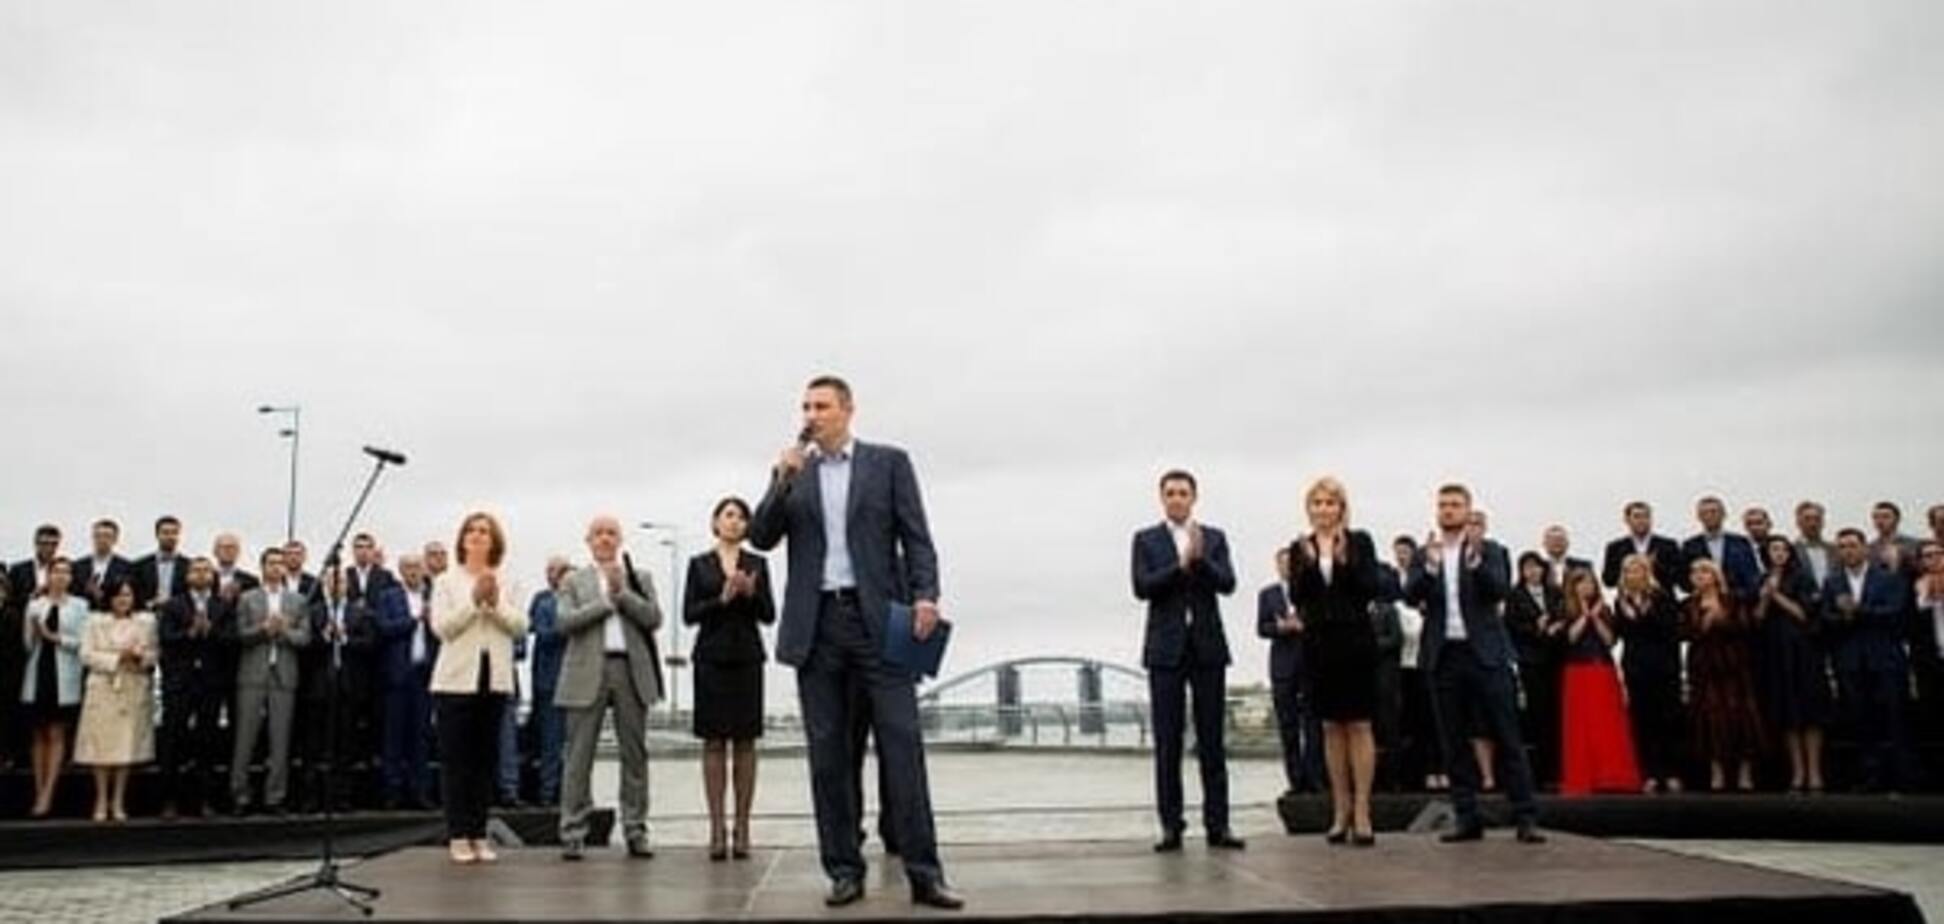 Кличко задає європейський тон своєю передвиборчою кампанією - експерт